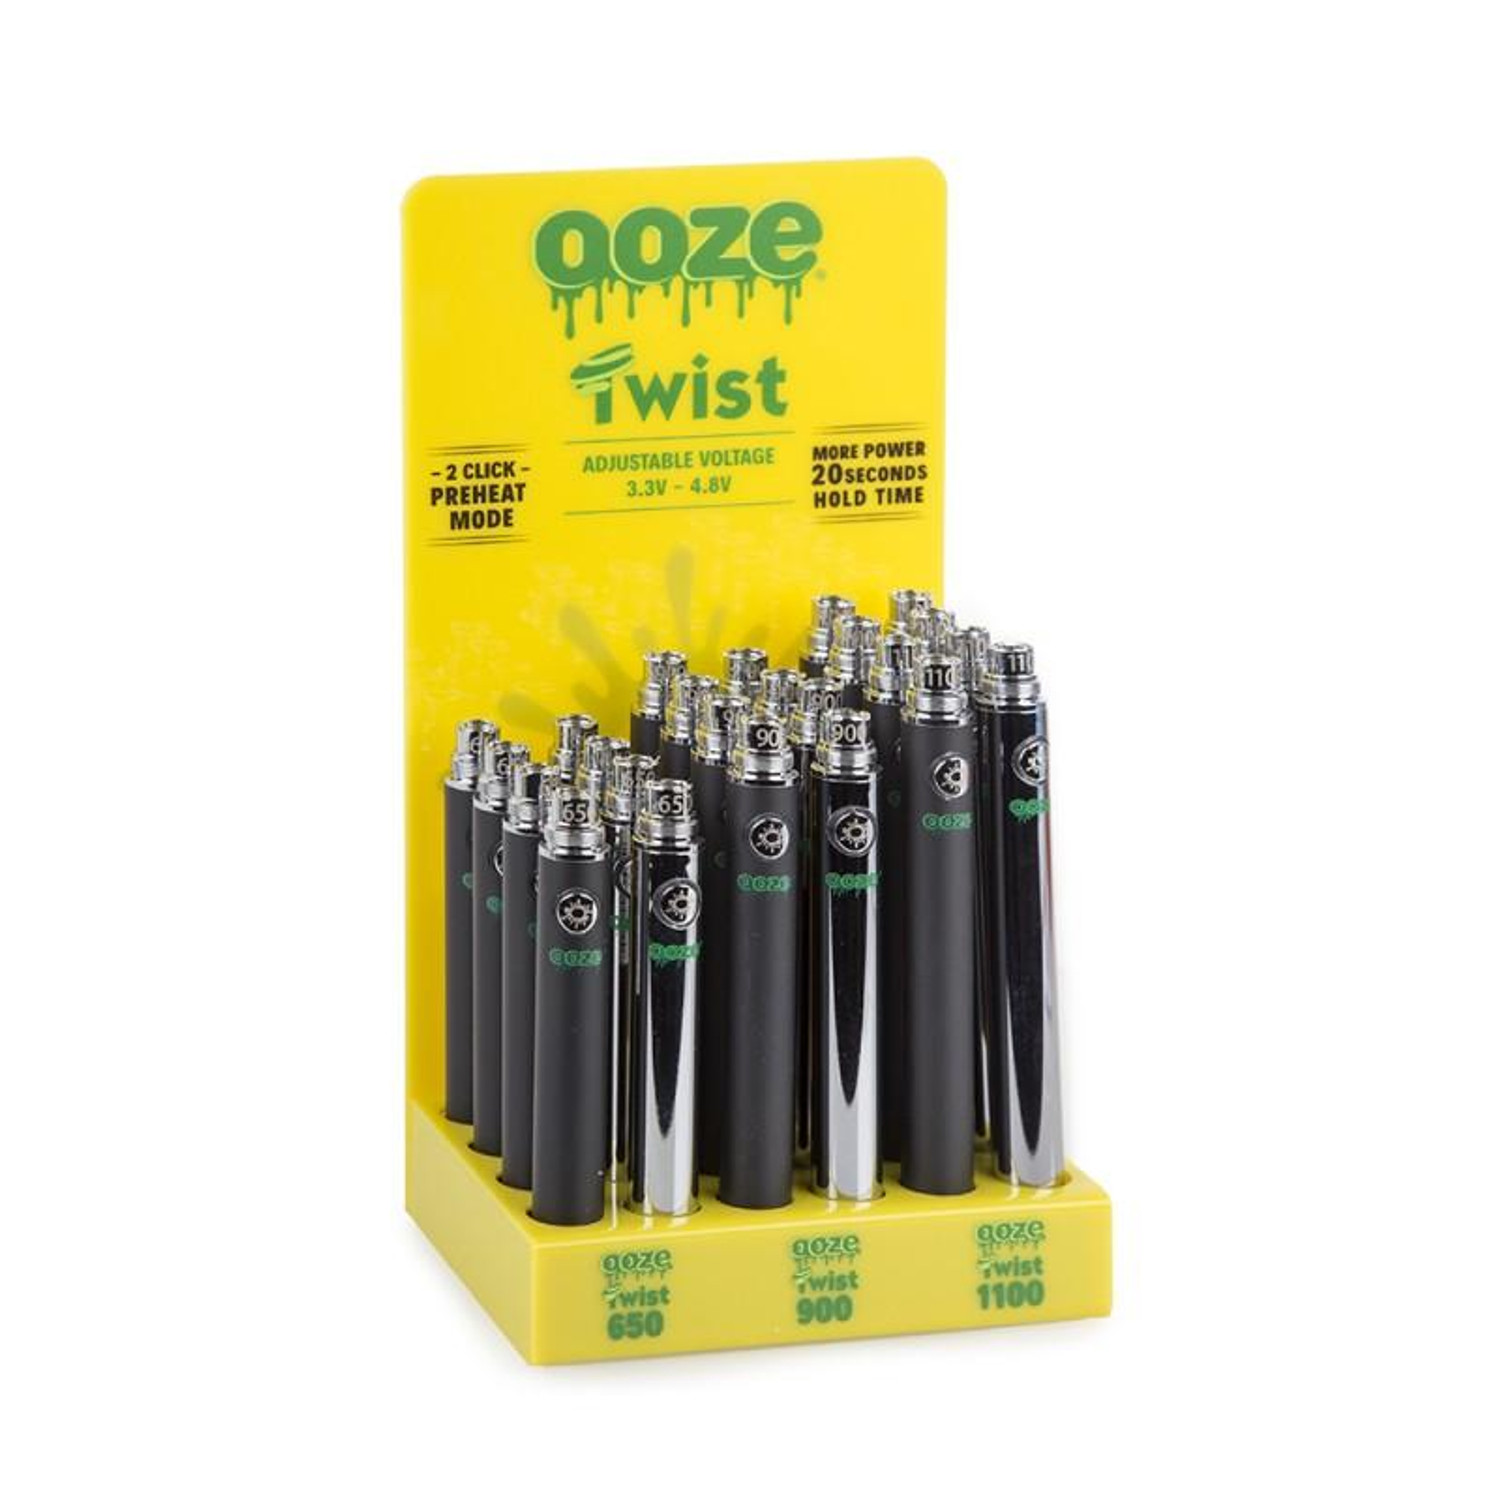 Wholesale Ooze Slim Twist 510 Vape Battery Pen